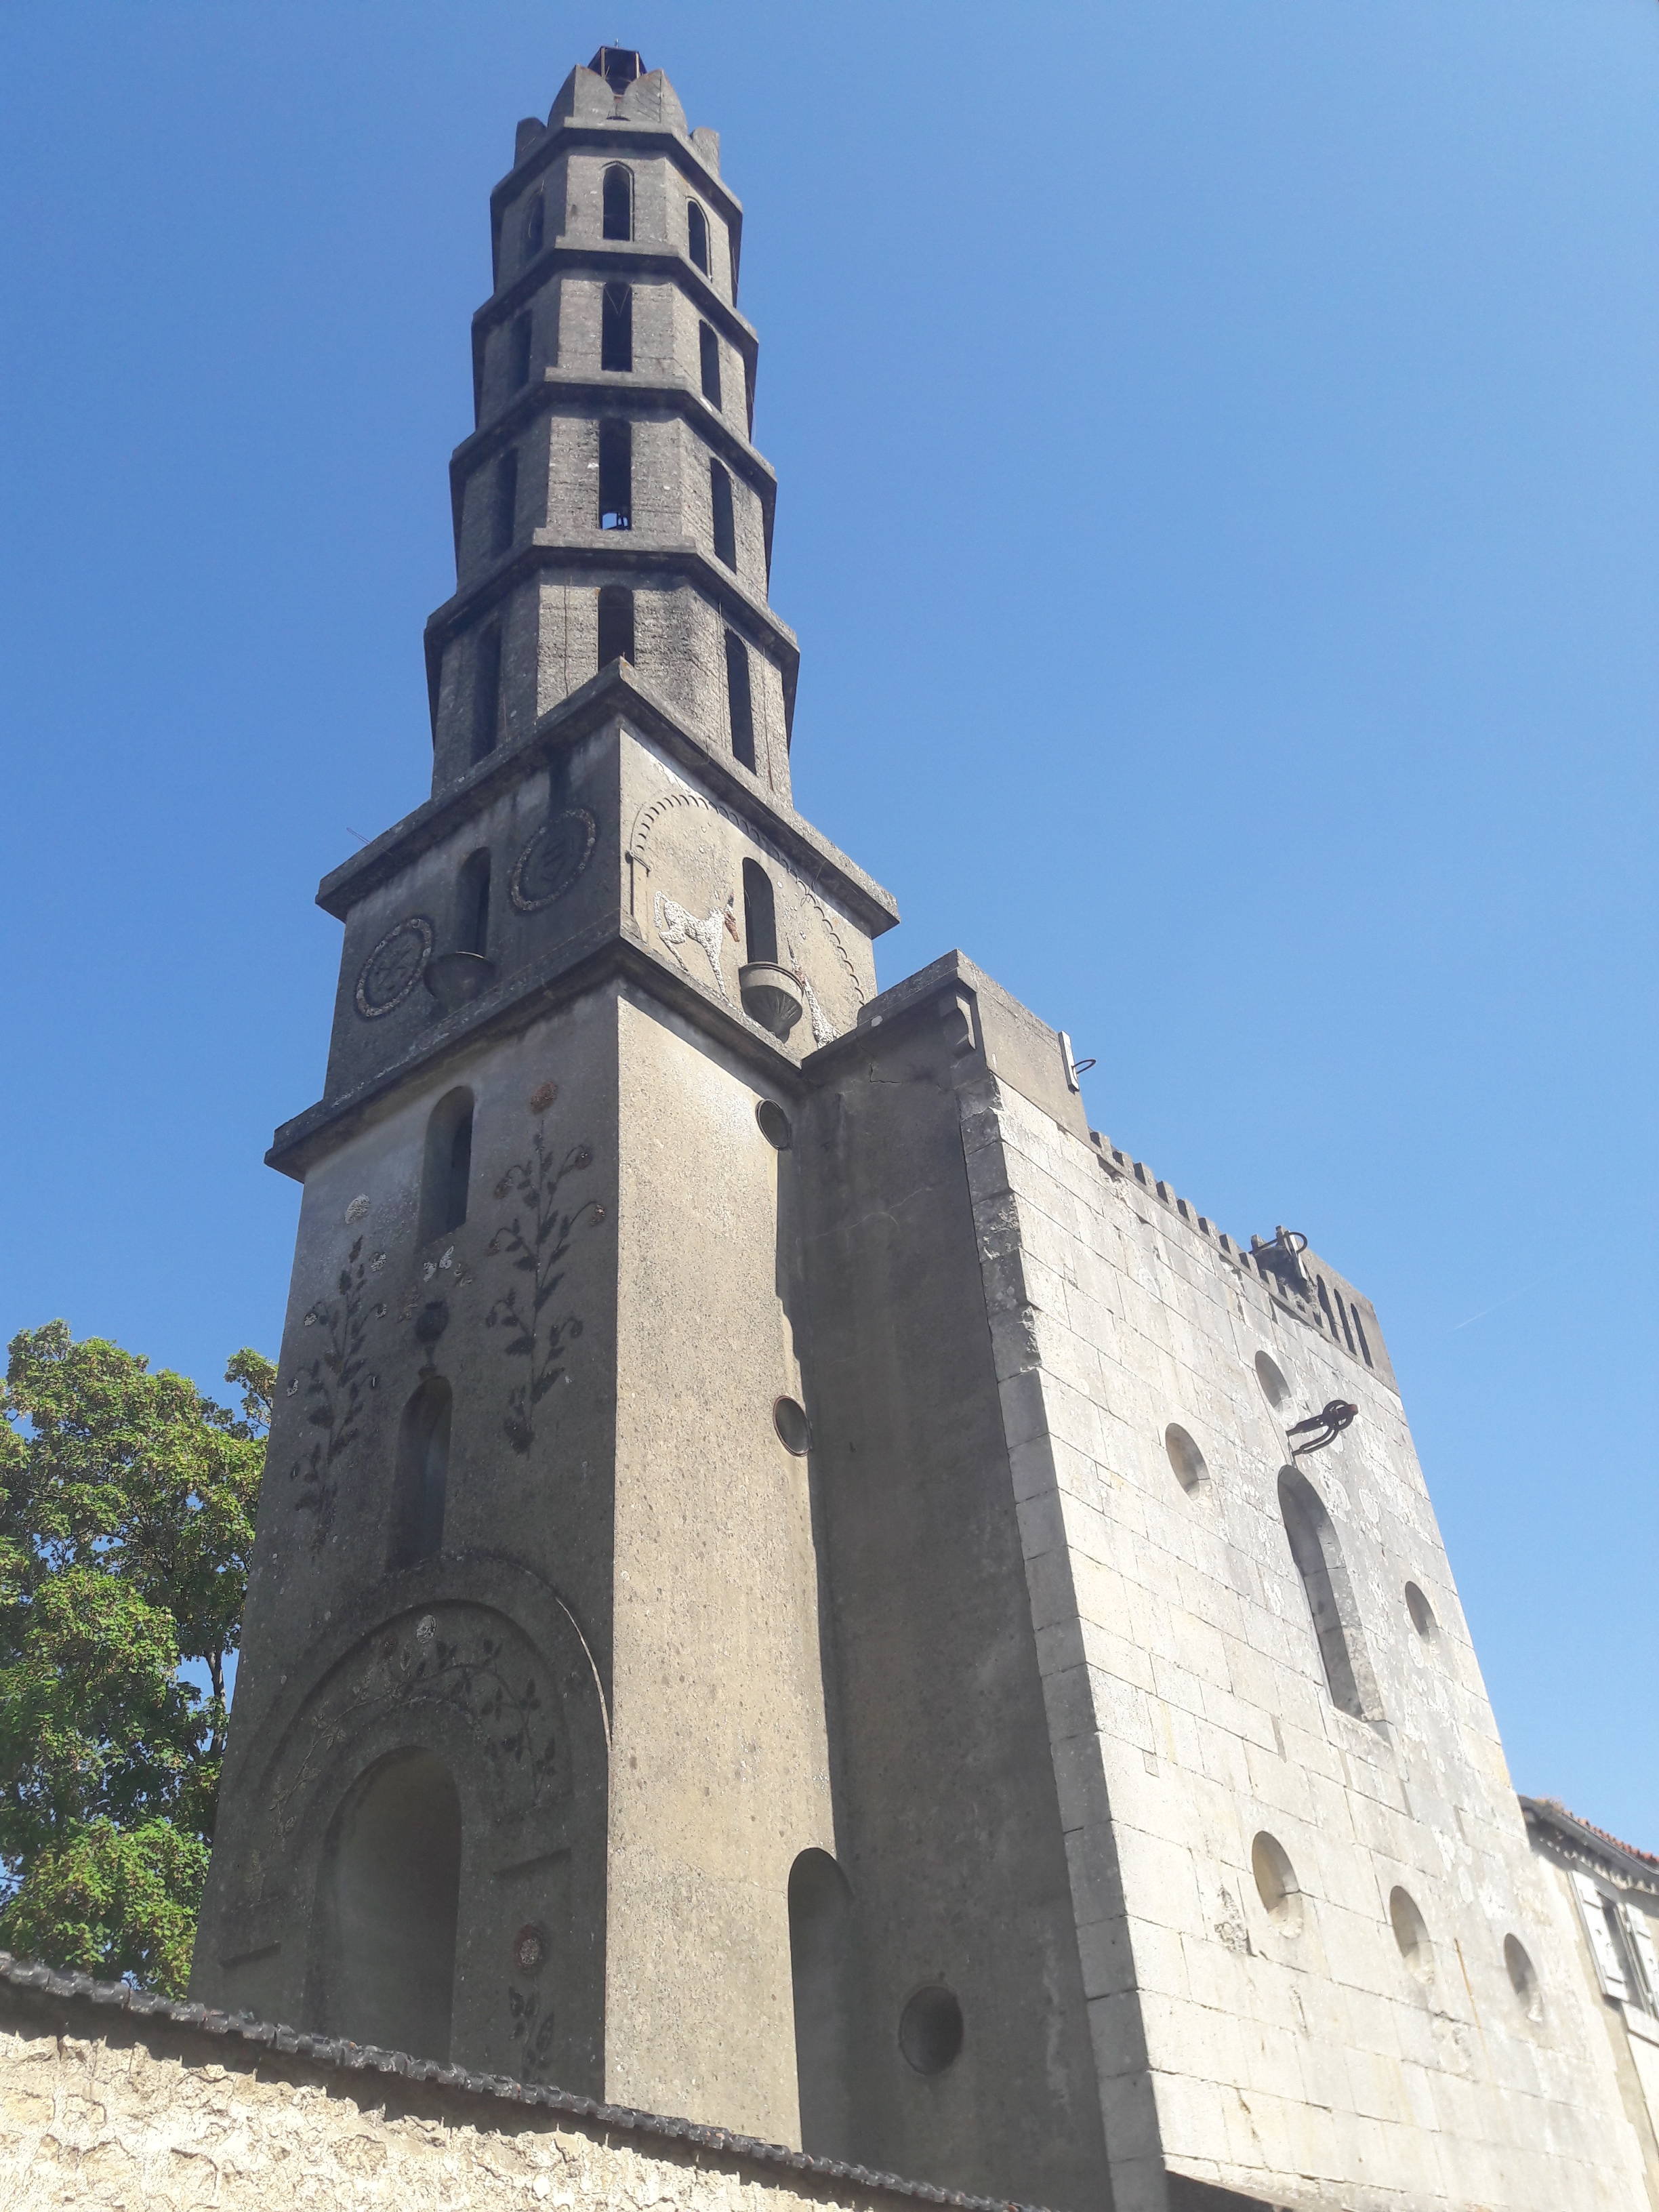 La tour Rivalland à Fontenay le Comte, ville du Parc naturel régional du Marais poitevin